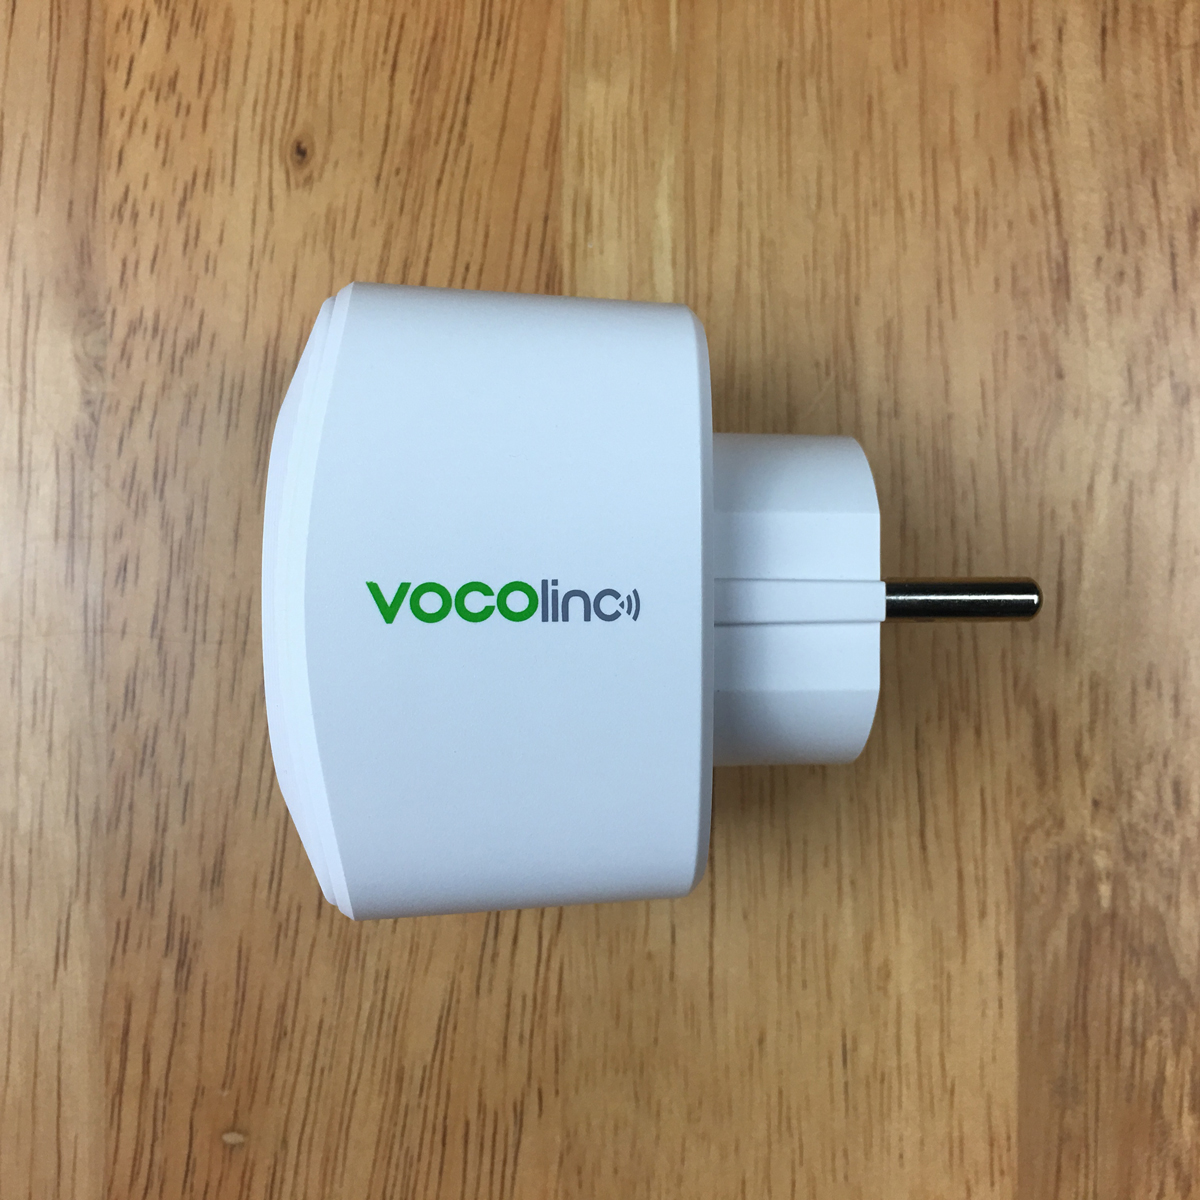 1568881149 473 The Vocolinc EU Smart Plug and Power Strip – First